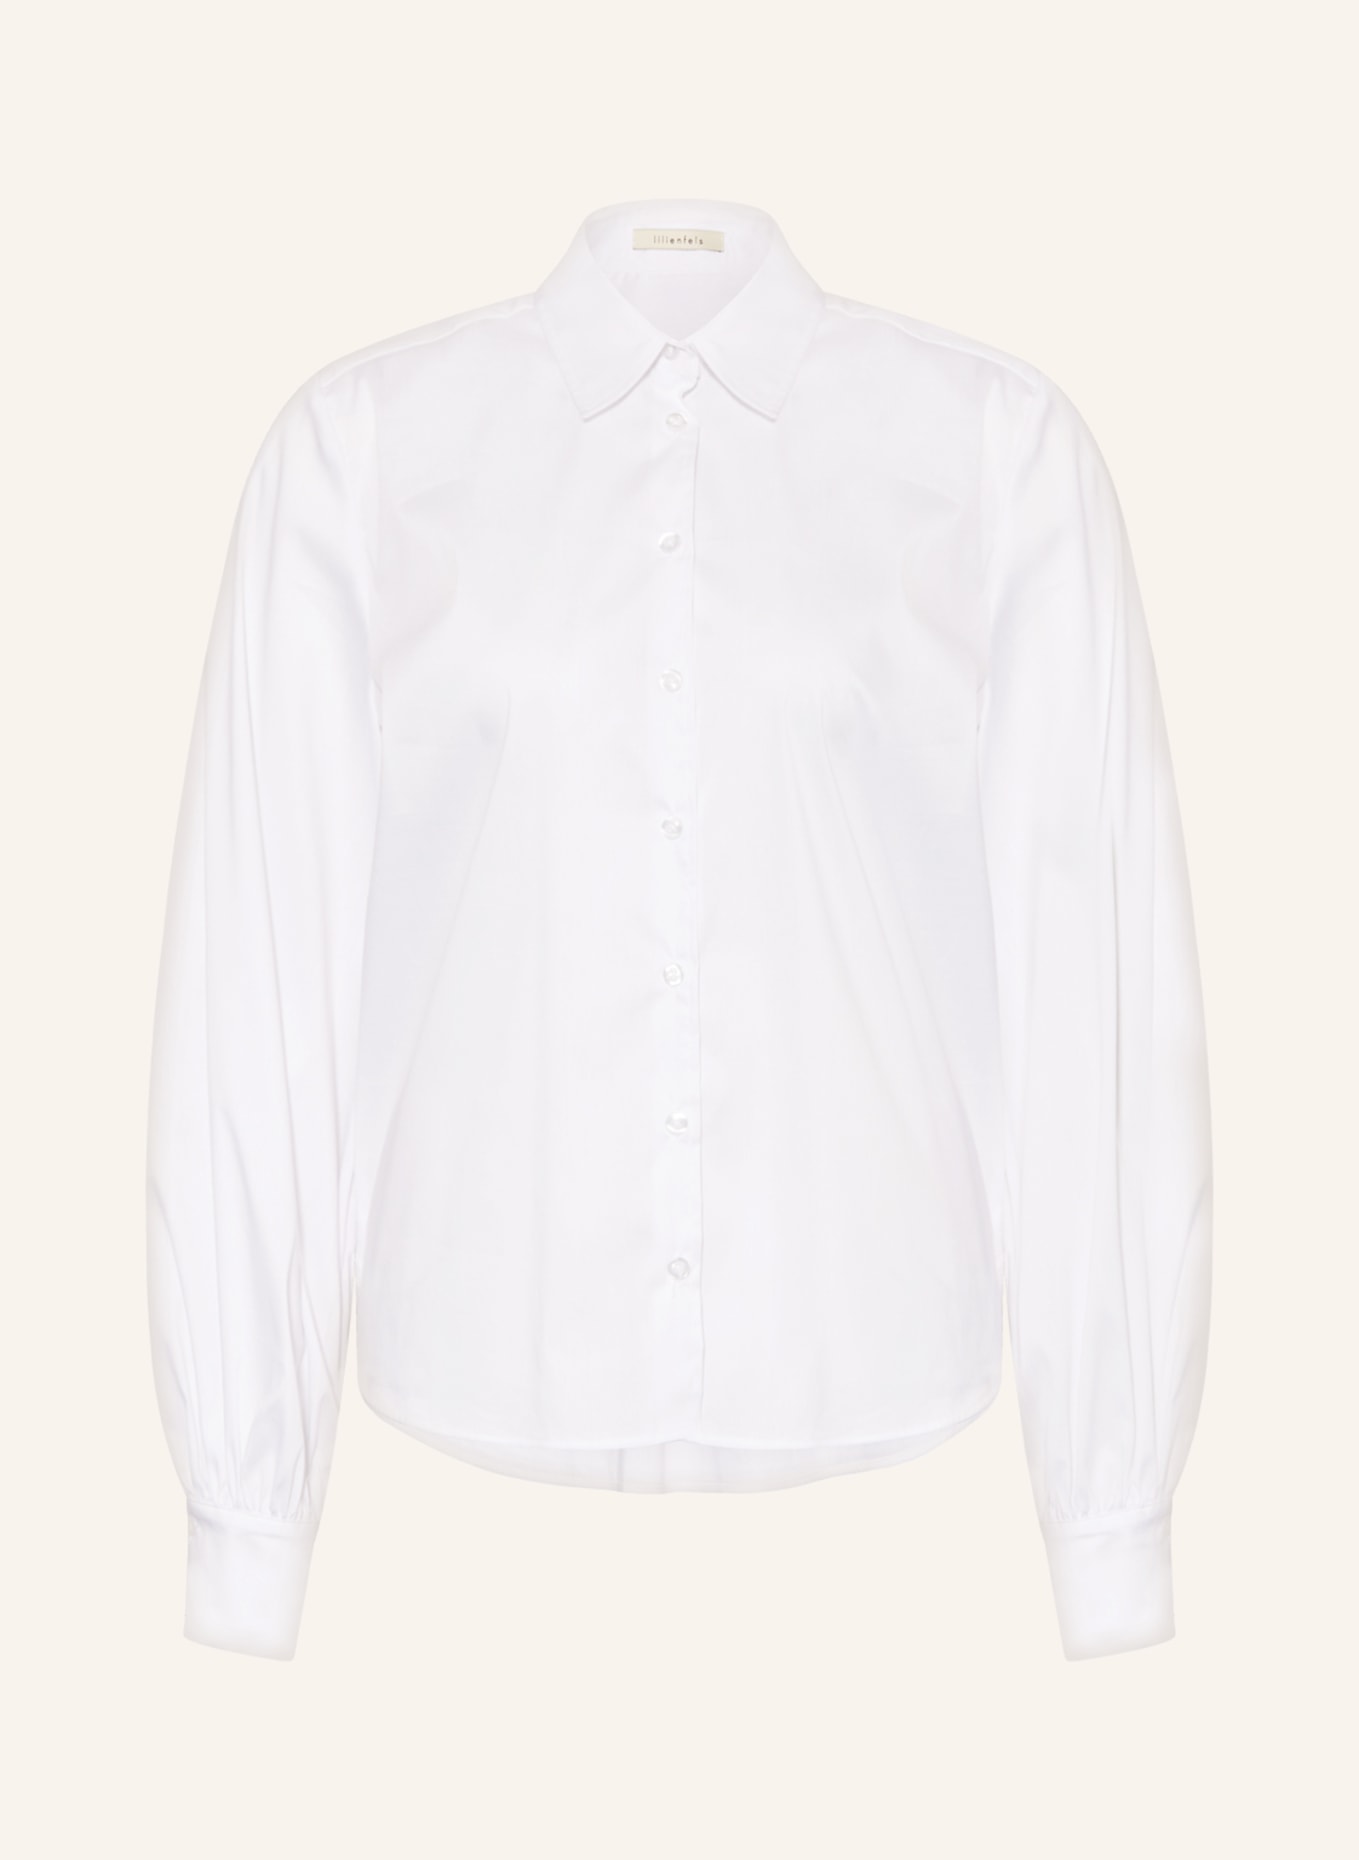 lilienfels Shirt blouse, Color: WHITE (Image 1)